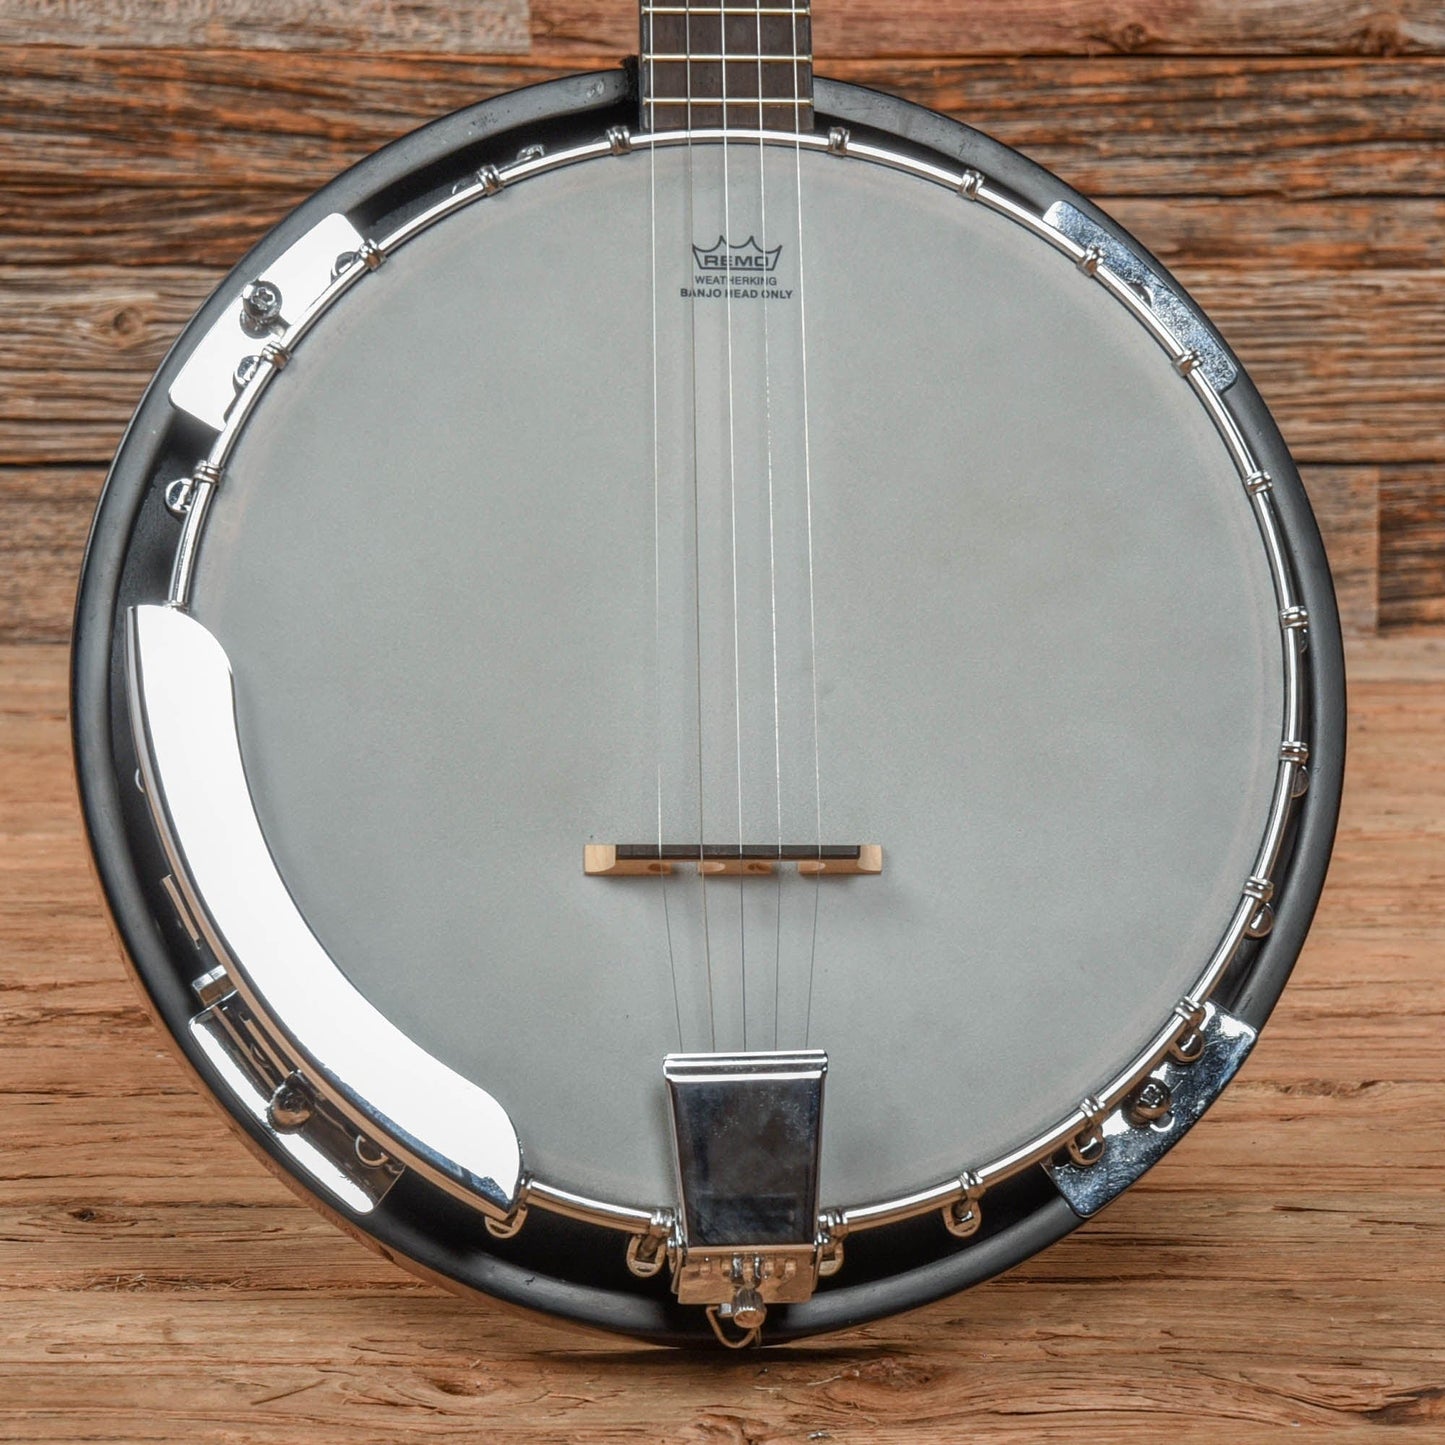 Hohner HB-25 Brown Folk Instruments / Banjos